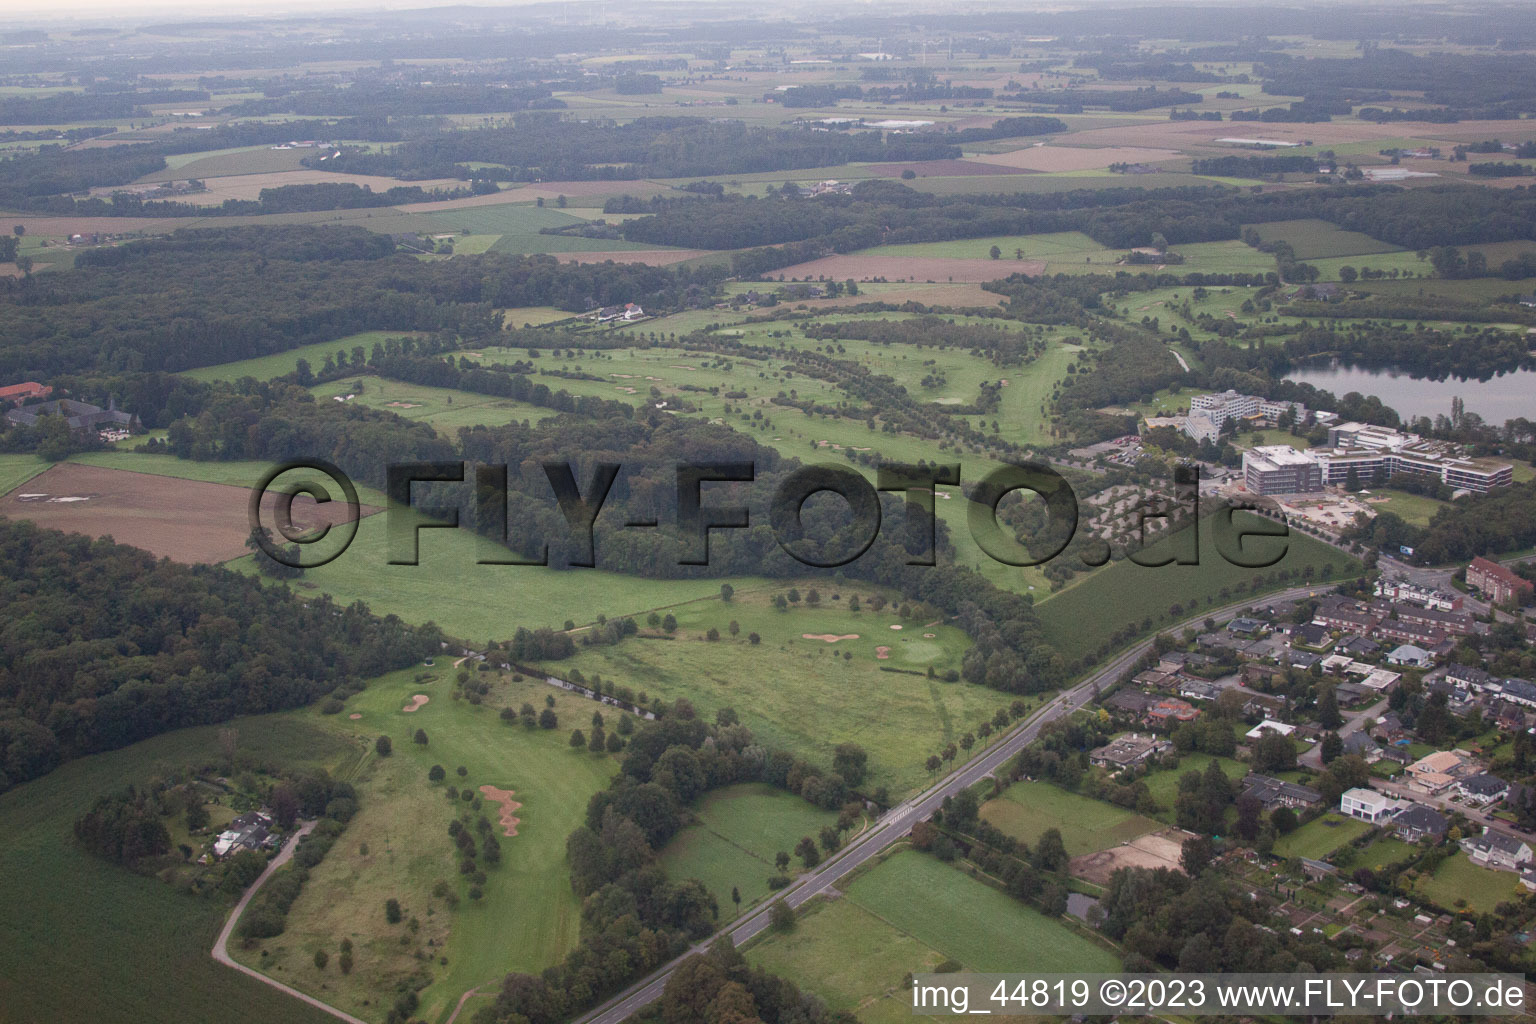 Aerial view of Veert in the state North Rhine-Westphalia, Germany